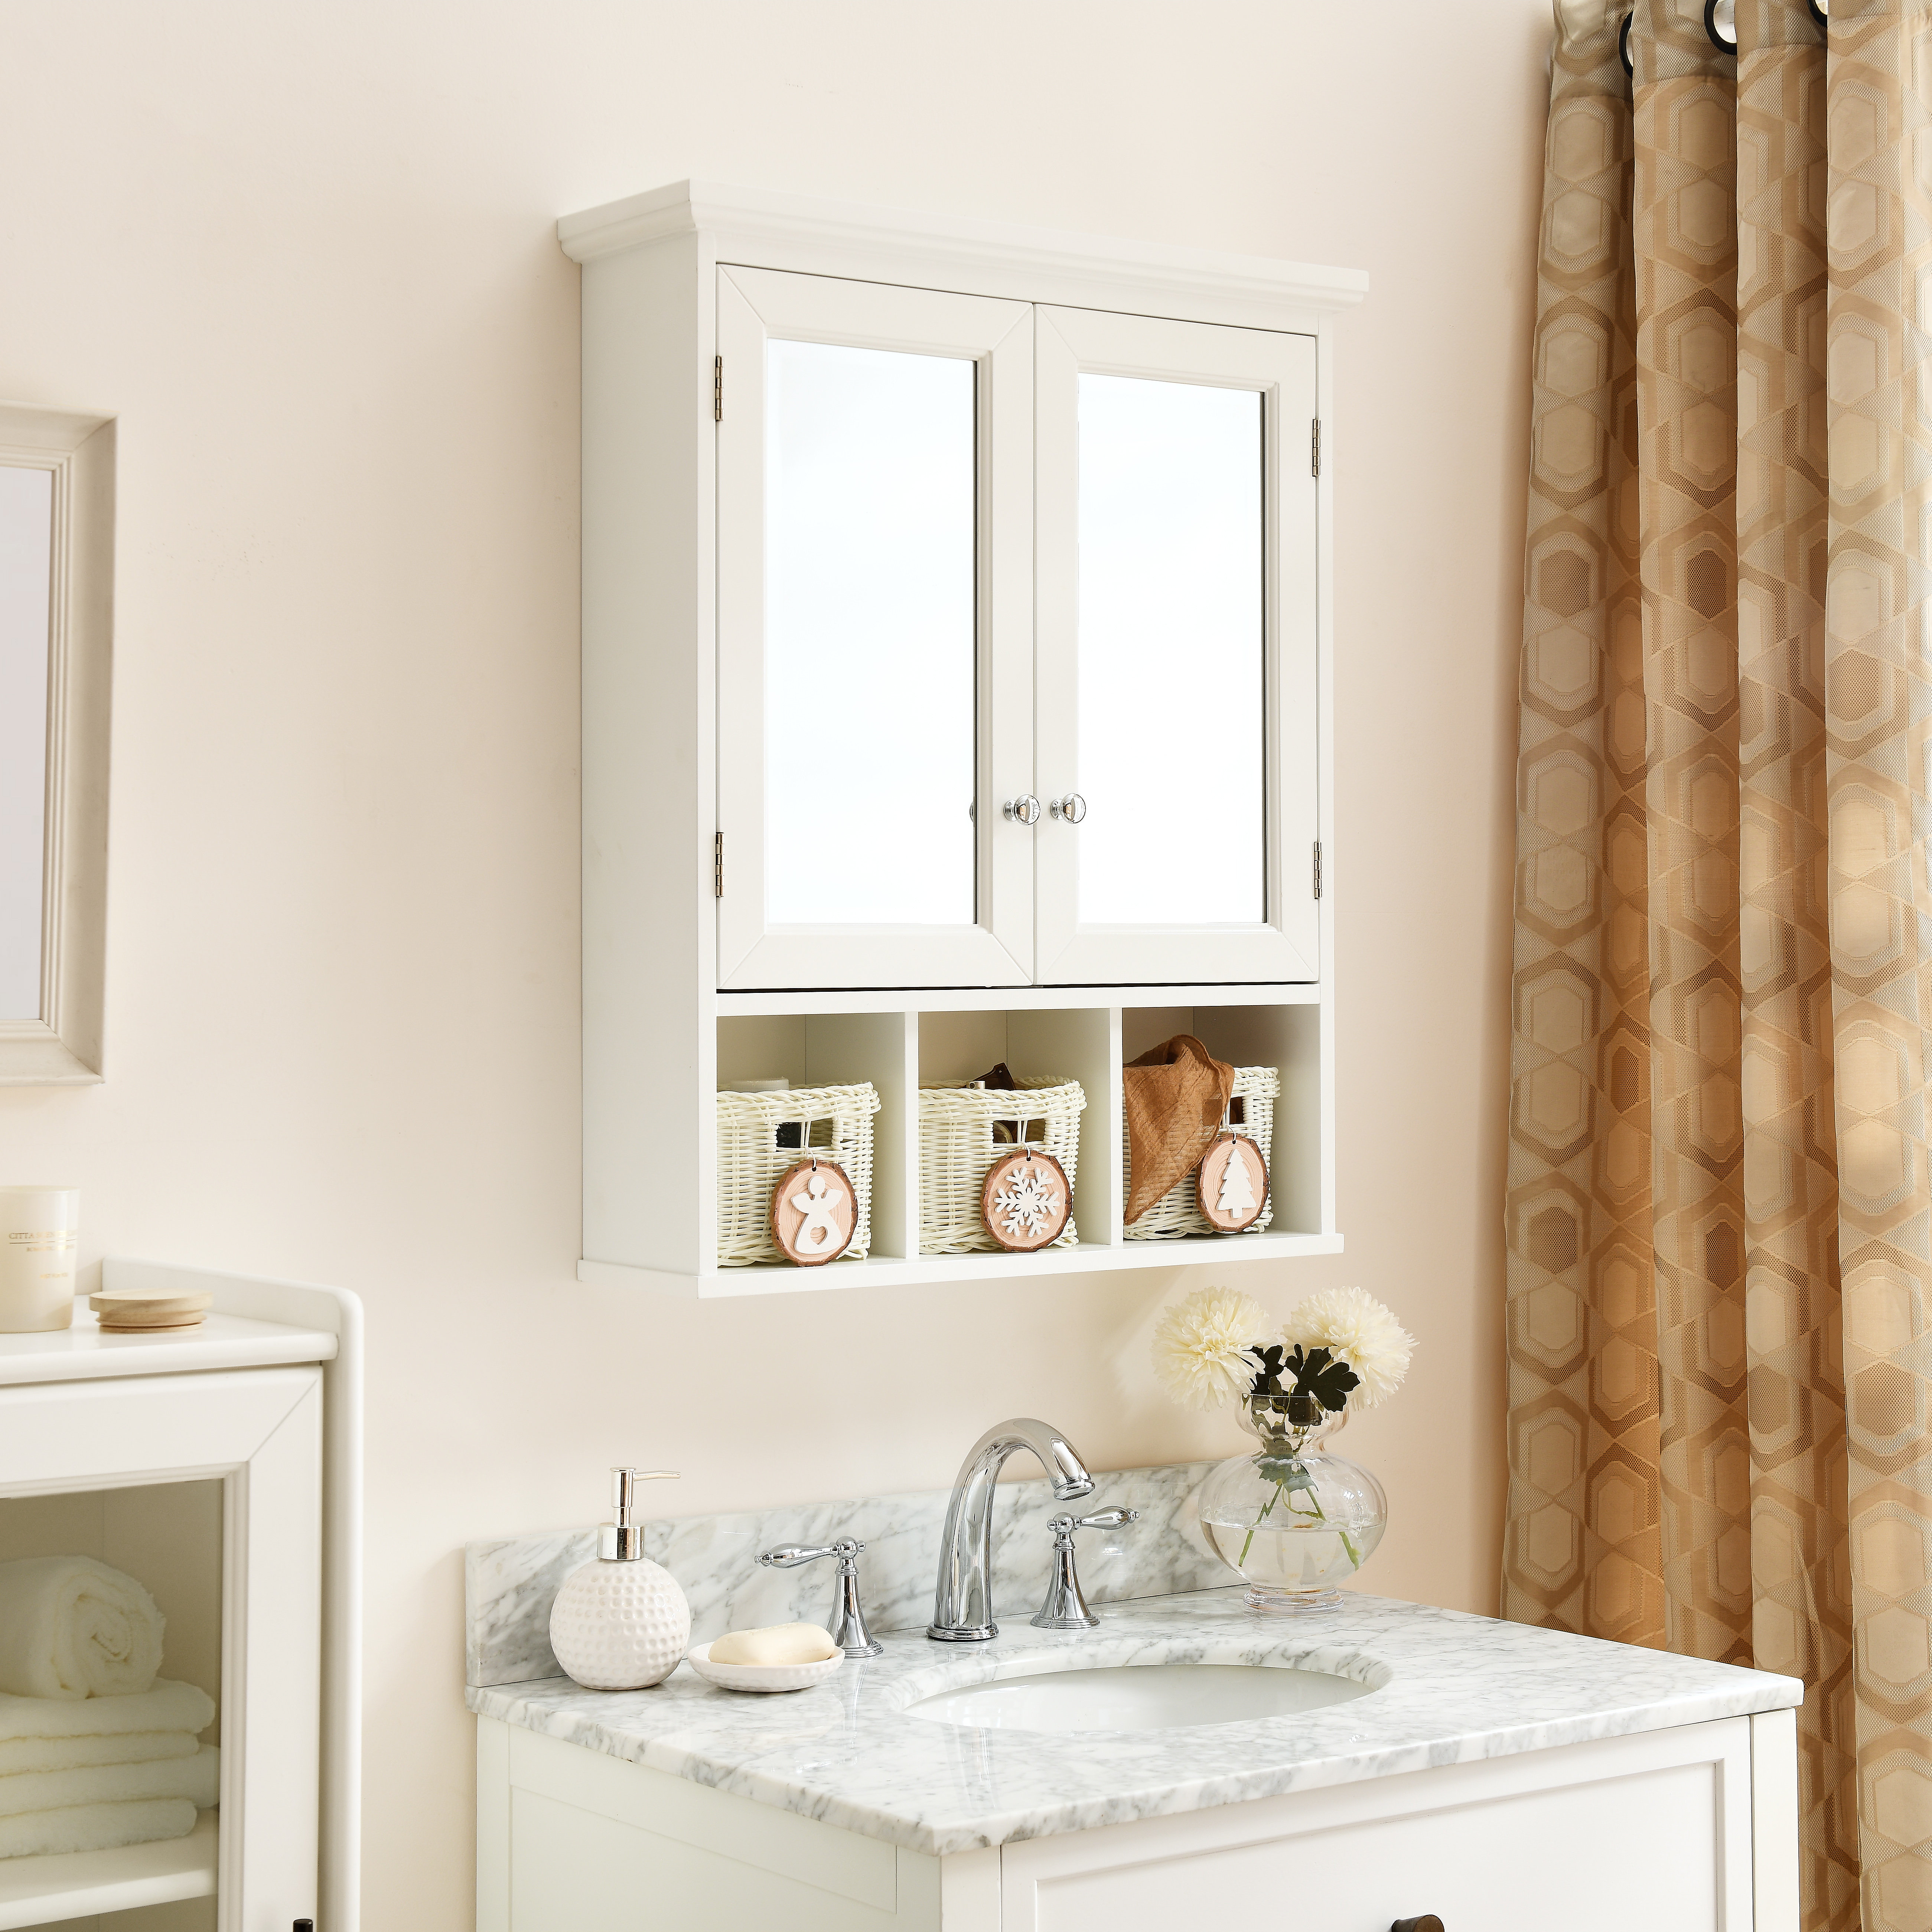 Deprise White Bathroom Storage Cabinet Ebern Designs